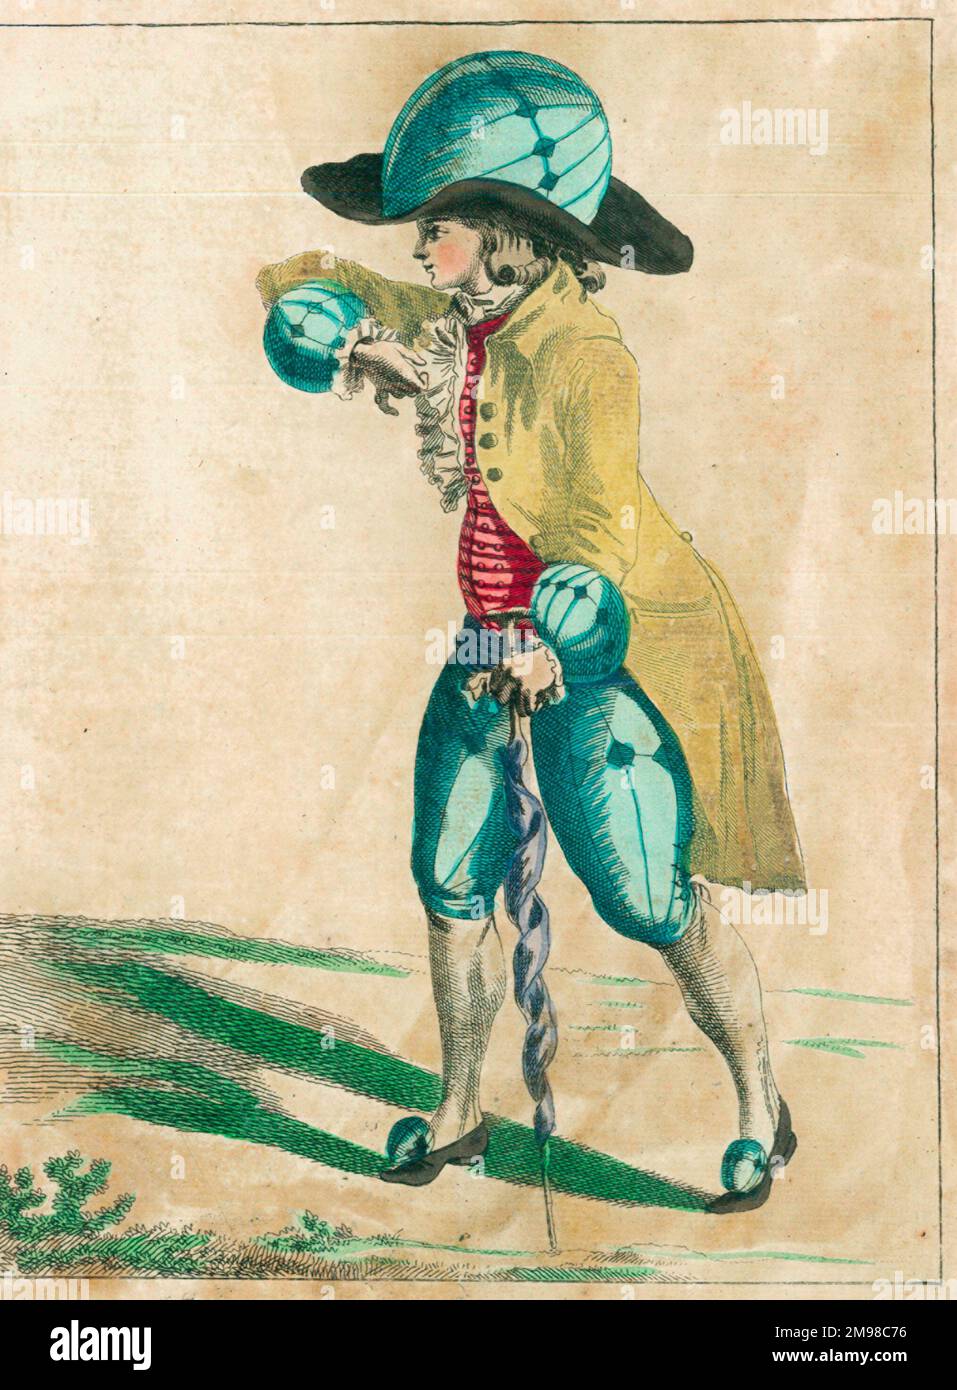 Ein Paar französische Lithografien aus dem späten 18. Jahrhundert, die die "Ballonmanie" widerspiegeln, die in ganz Europa zur Zeit der ersten Ballonaufsteigung herrschte, wobei die modische Dame und der Gentleman aufgeblasene Ballondesigns in ihre Kostüme (Hüte, Kleid, Armschellen usw.) (2/2) einbrachten. Stockfoto